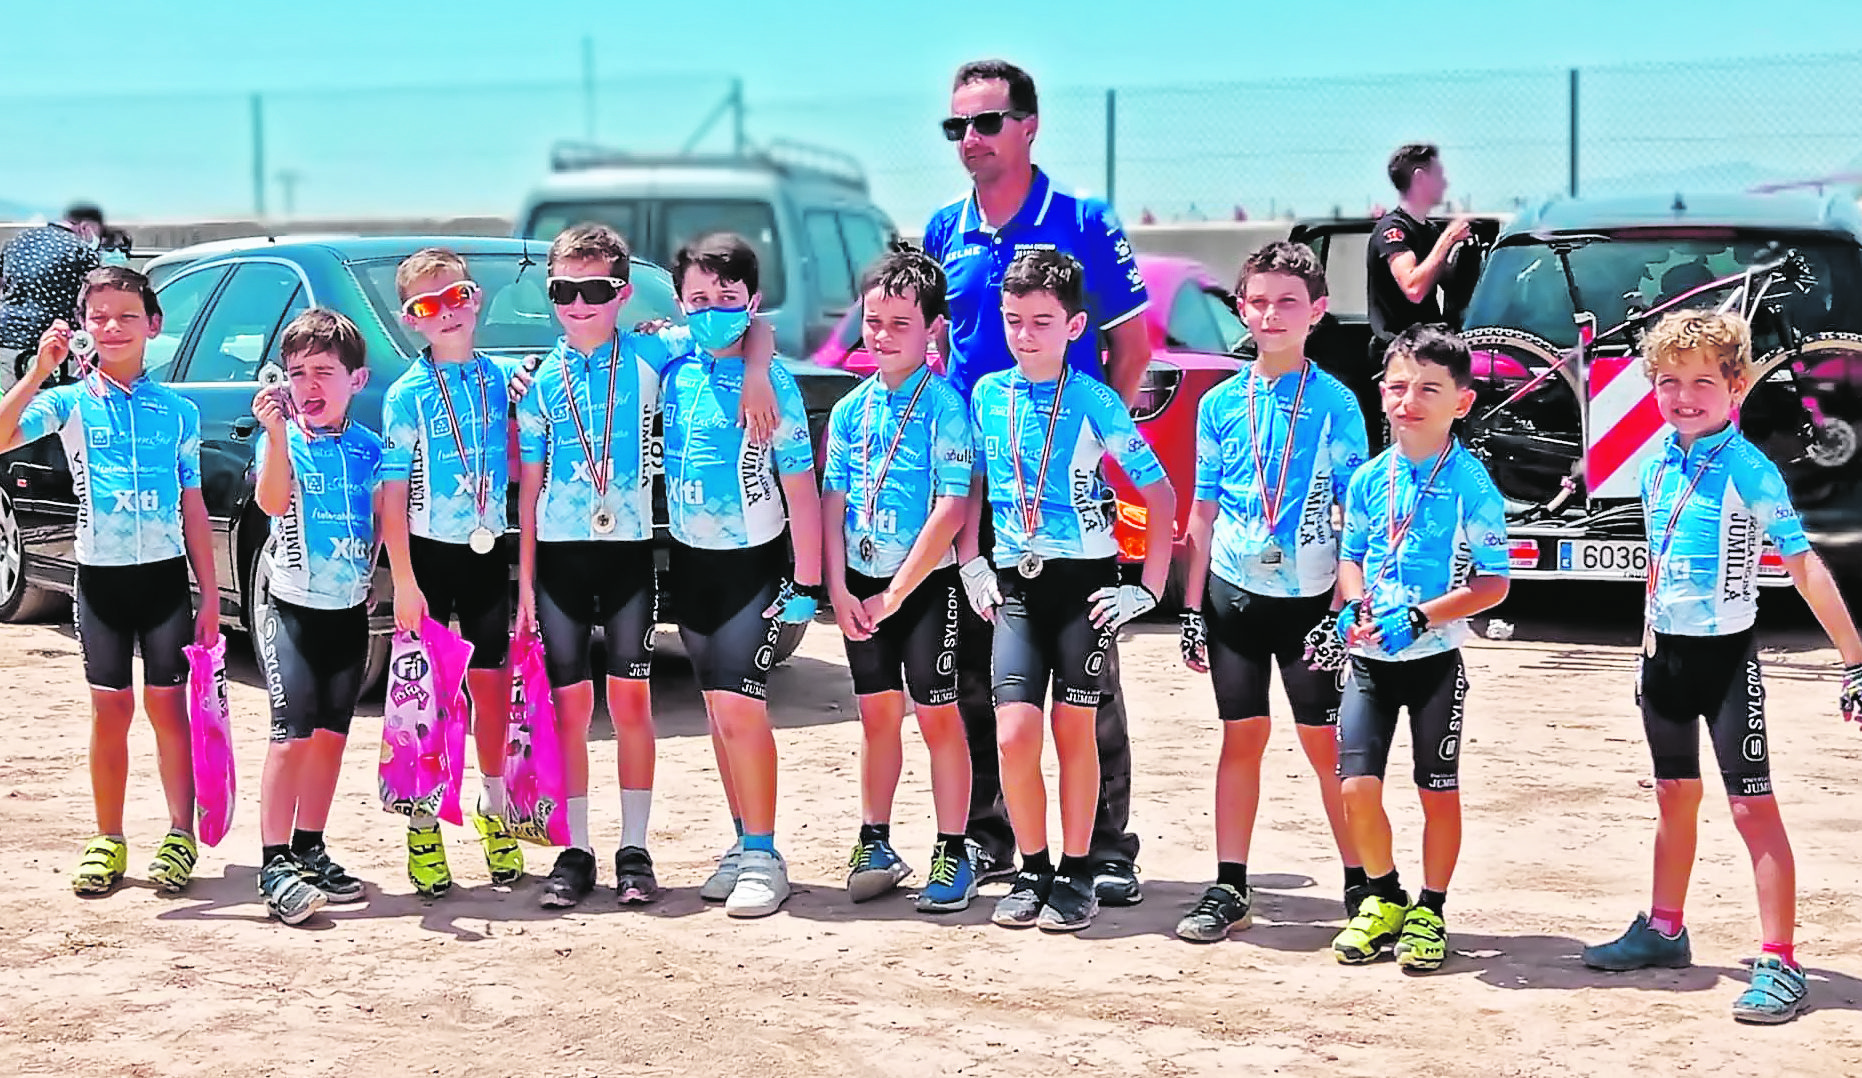 Once chicos de la Escuela de Ciclismo tomaron parte en el Gran Premio Lemon Team